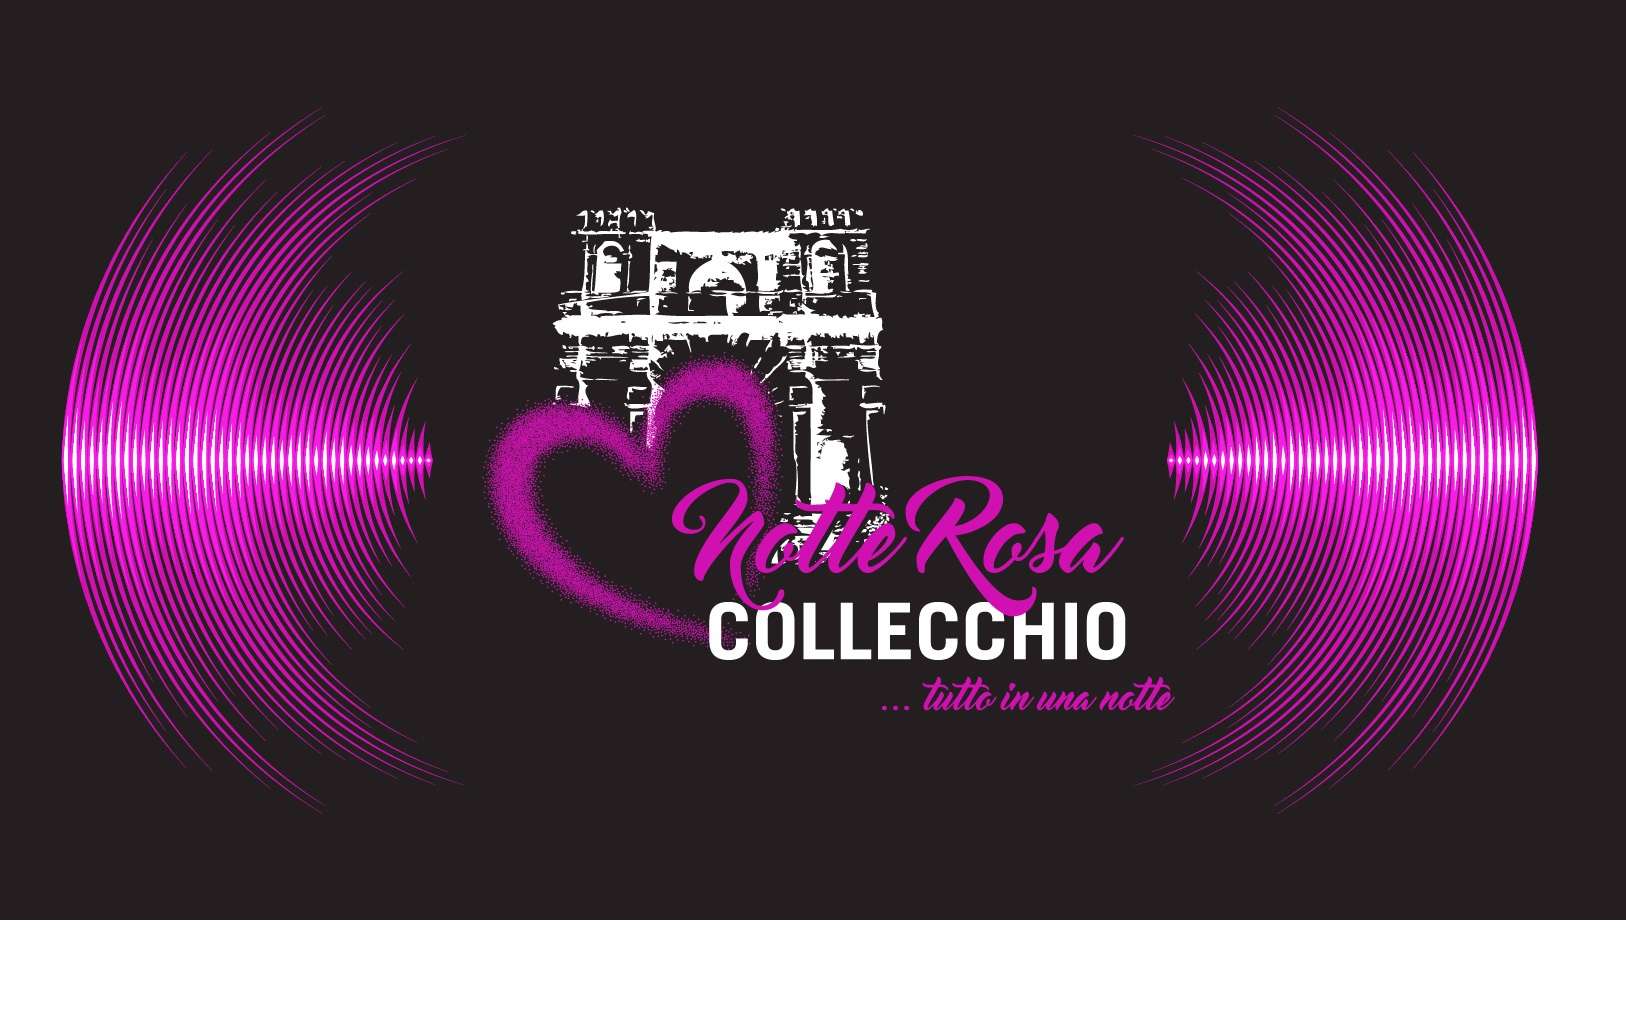 Notte Rosa a Collecchio, il 27 maggio 2017 con Max Testa